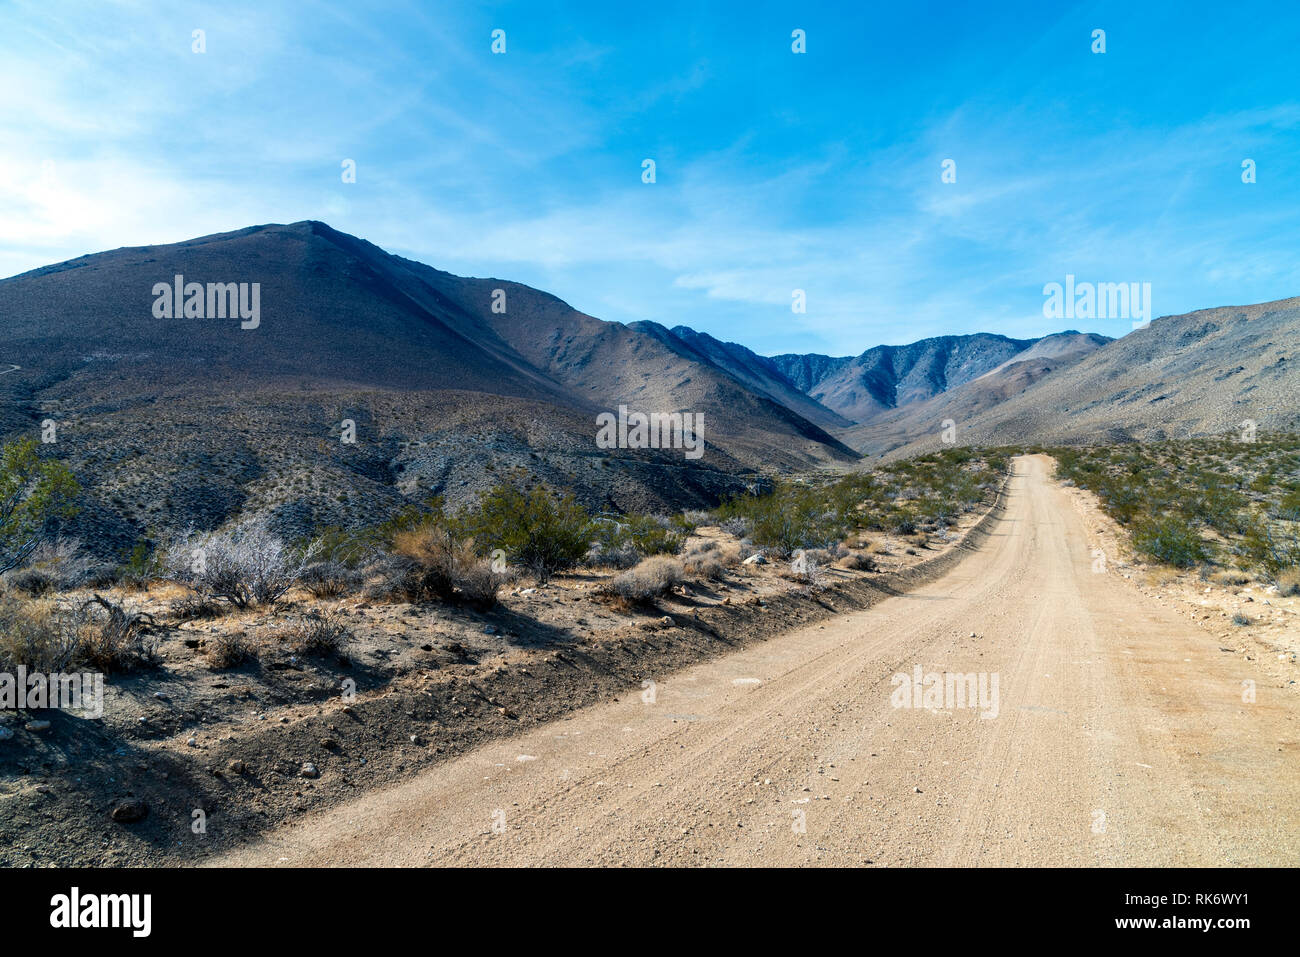 Fire strada che conduce fino in arido deserto montagna sotto il luminoso cielo blu con nuvole. Foto Stock